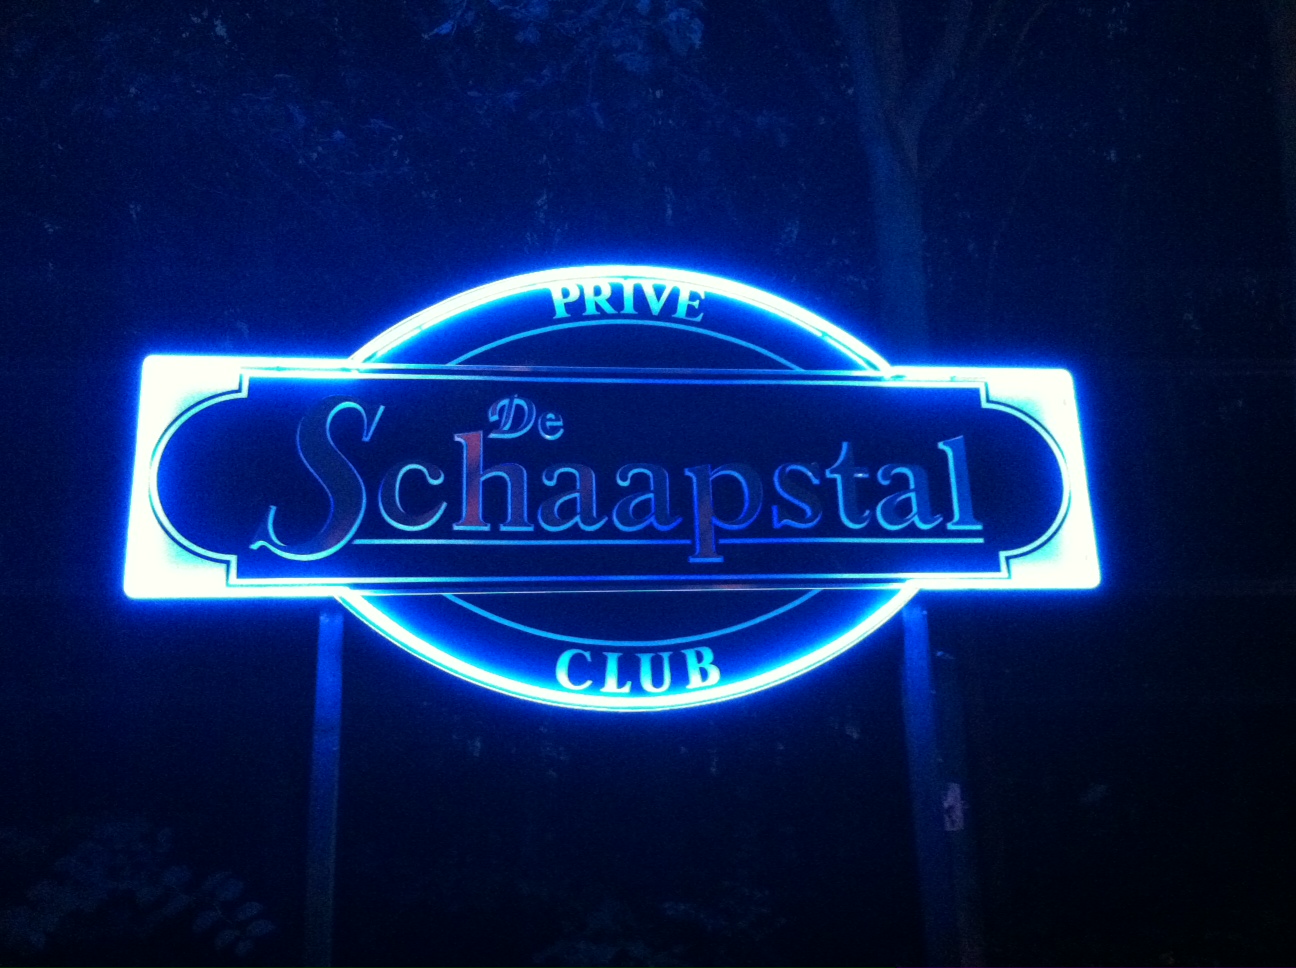 Club De Schaapstal